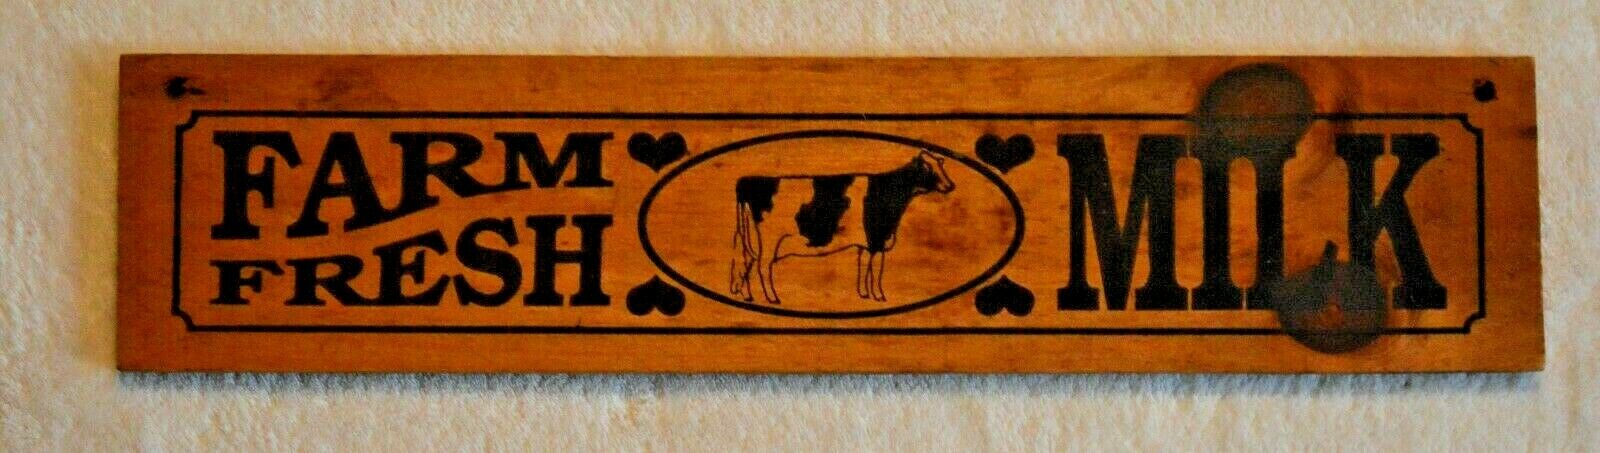 Vintage Wood Farm Fresh Milk Sign 15 1/2 X 3 1/2 Inches